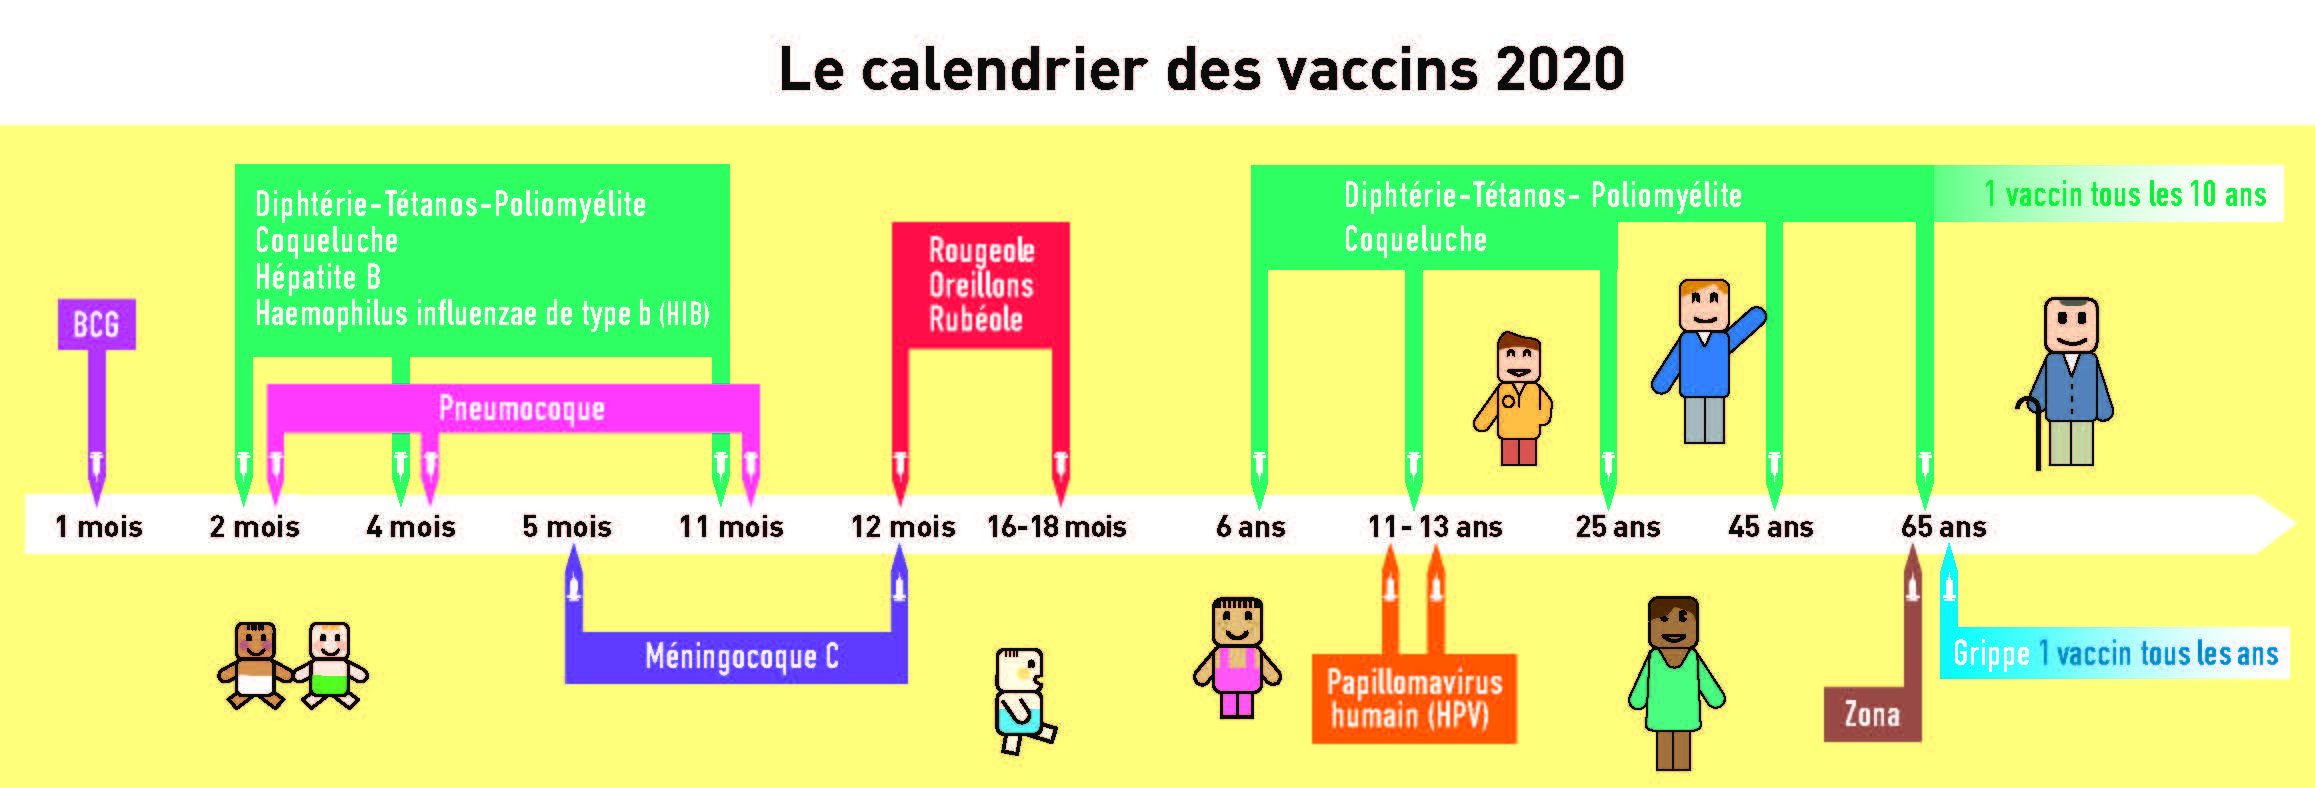 Calendrier 2020 Vaccins à tous les âges 